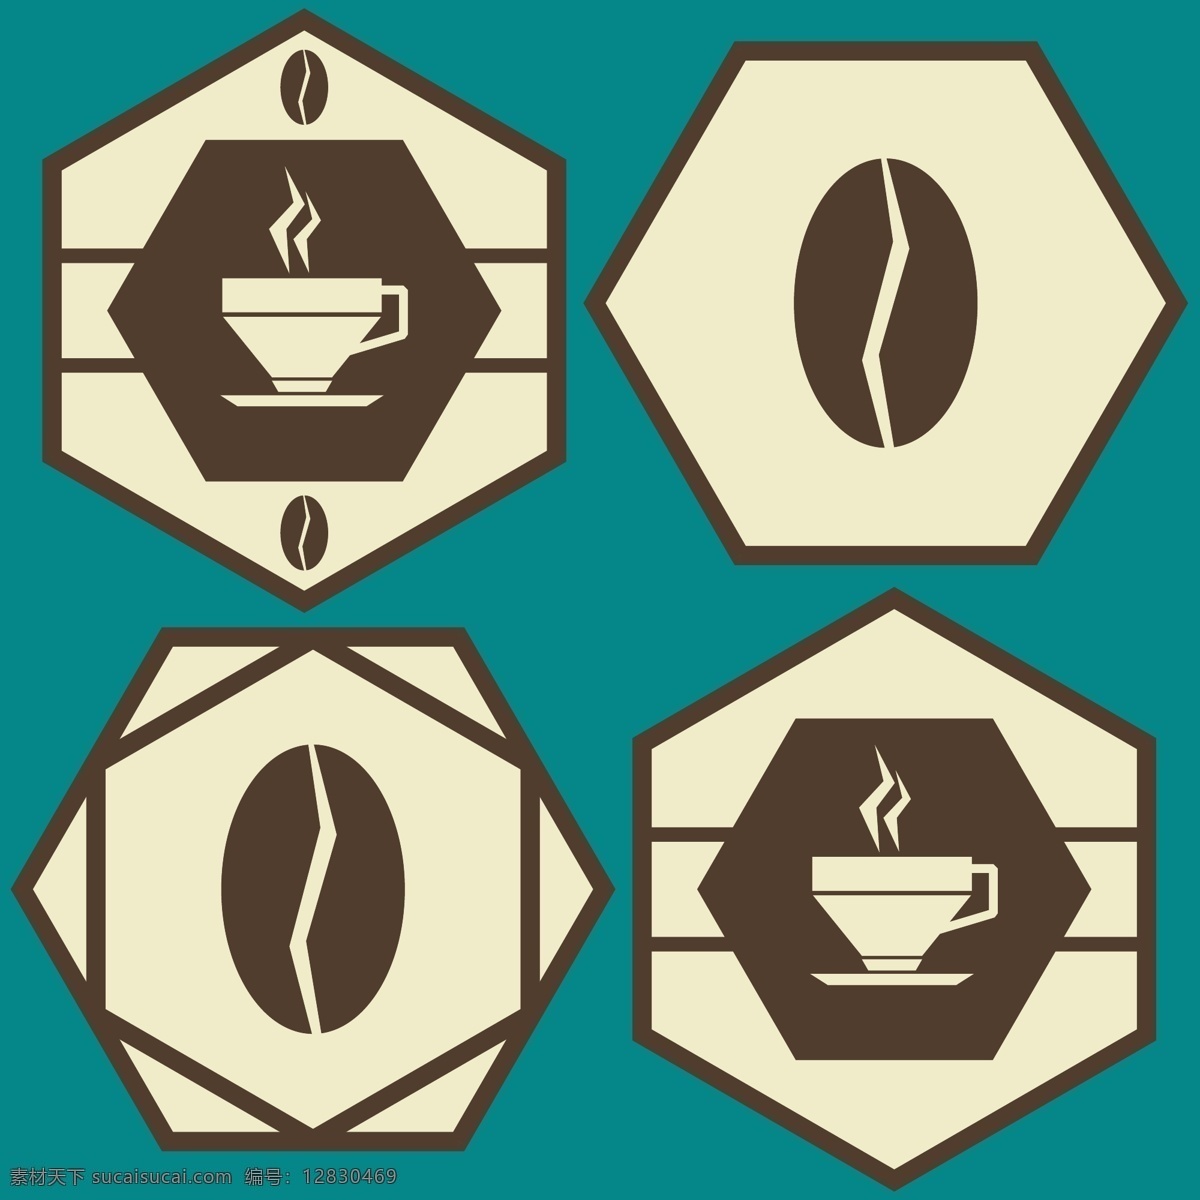 咖啡图标设计 咖啡豆 咖啡徽标 咖啡标志 咖啡 logo 咖啡标志设计 底纹背景 底纹边框 矢量素材 图标 标签 标志图标 其他图标 白色